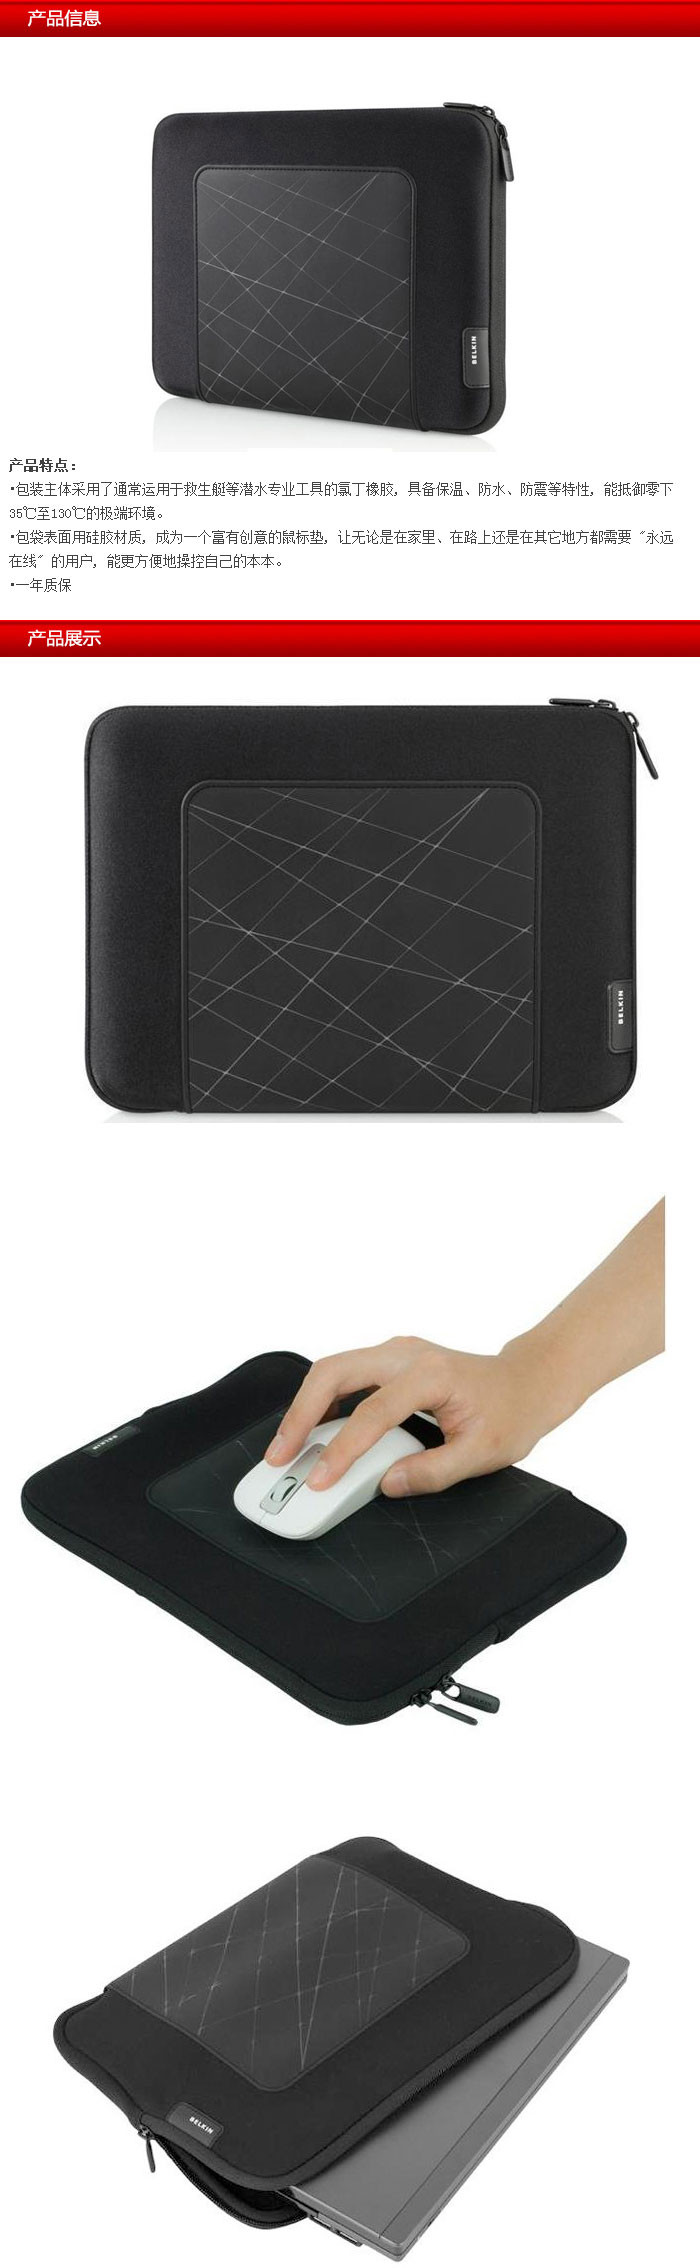 贝尔金 迷你上网本电脑袋(Grip)(10.6寸) F8N301qe